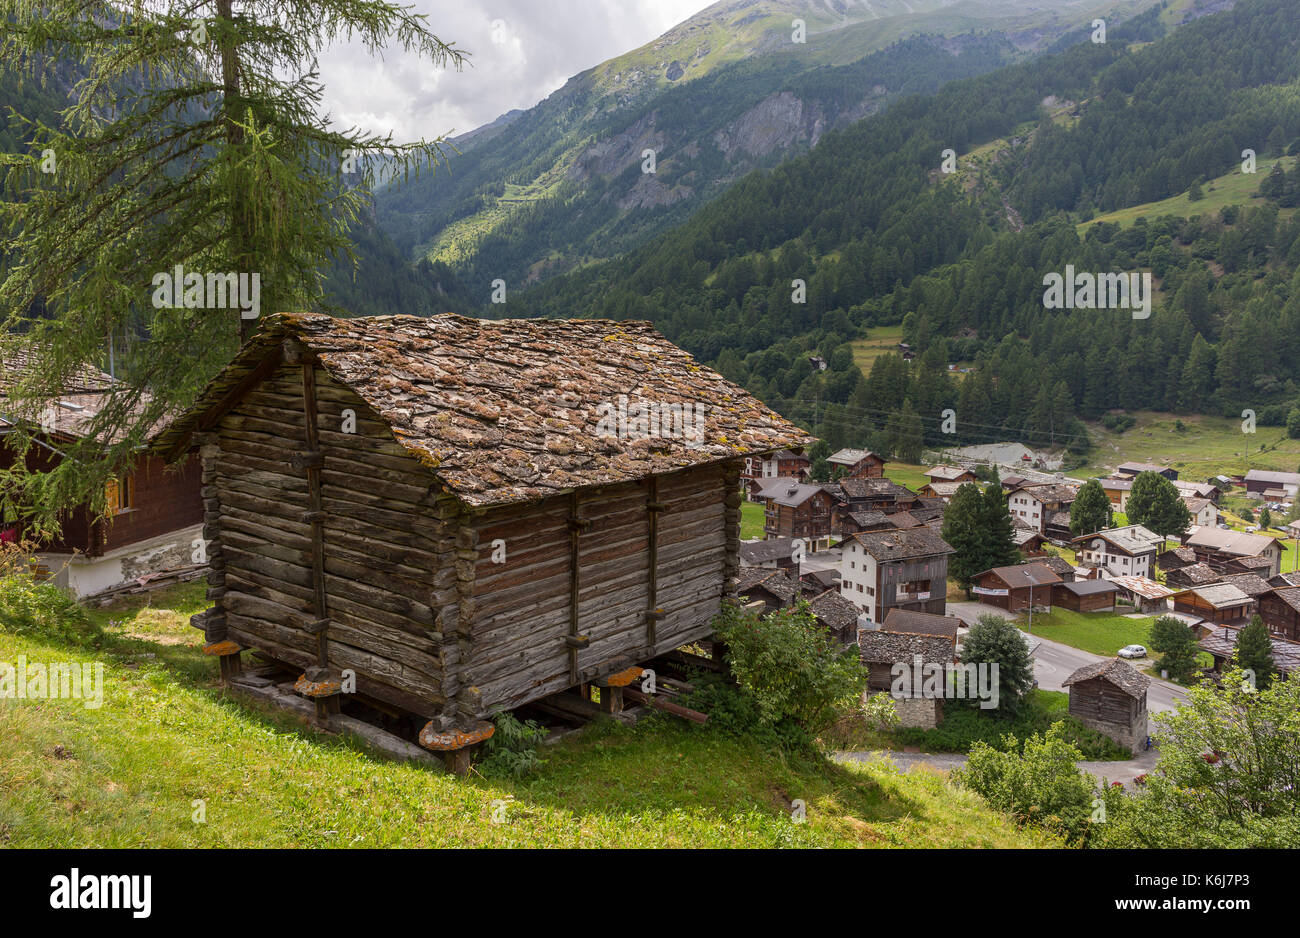 Les hauderes, Svizzera - cabina tradizionale alpi Pennine. Foto Stock